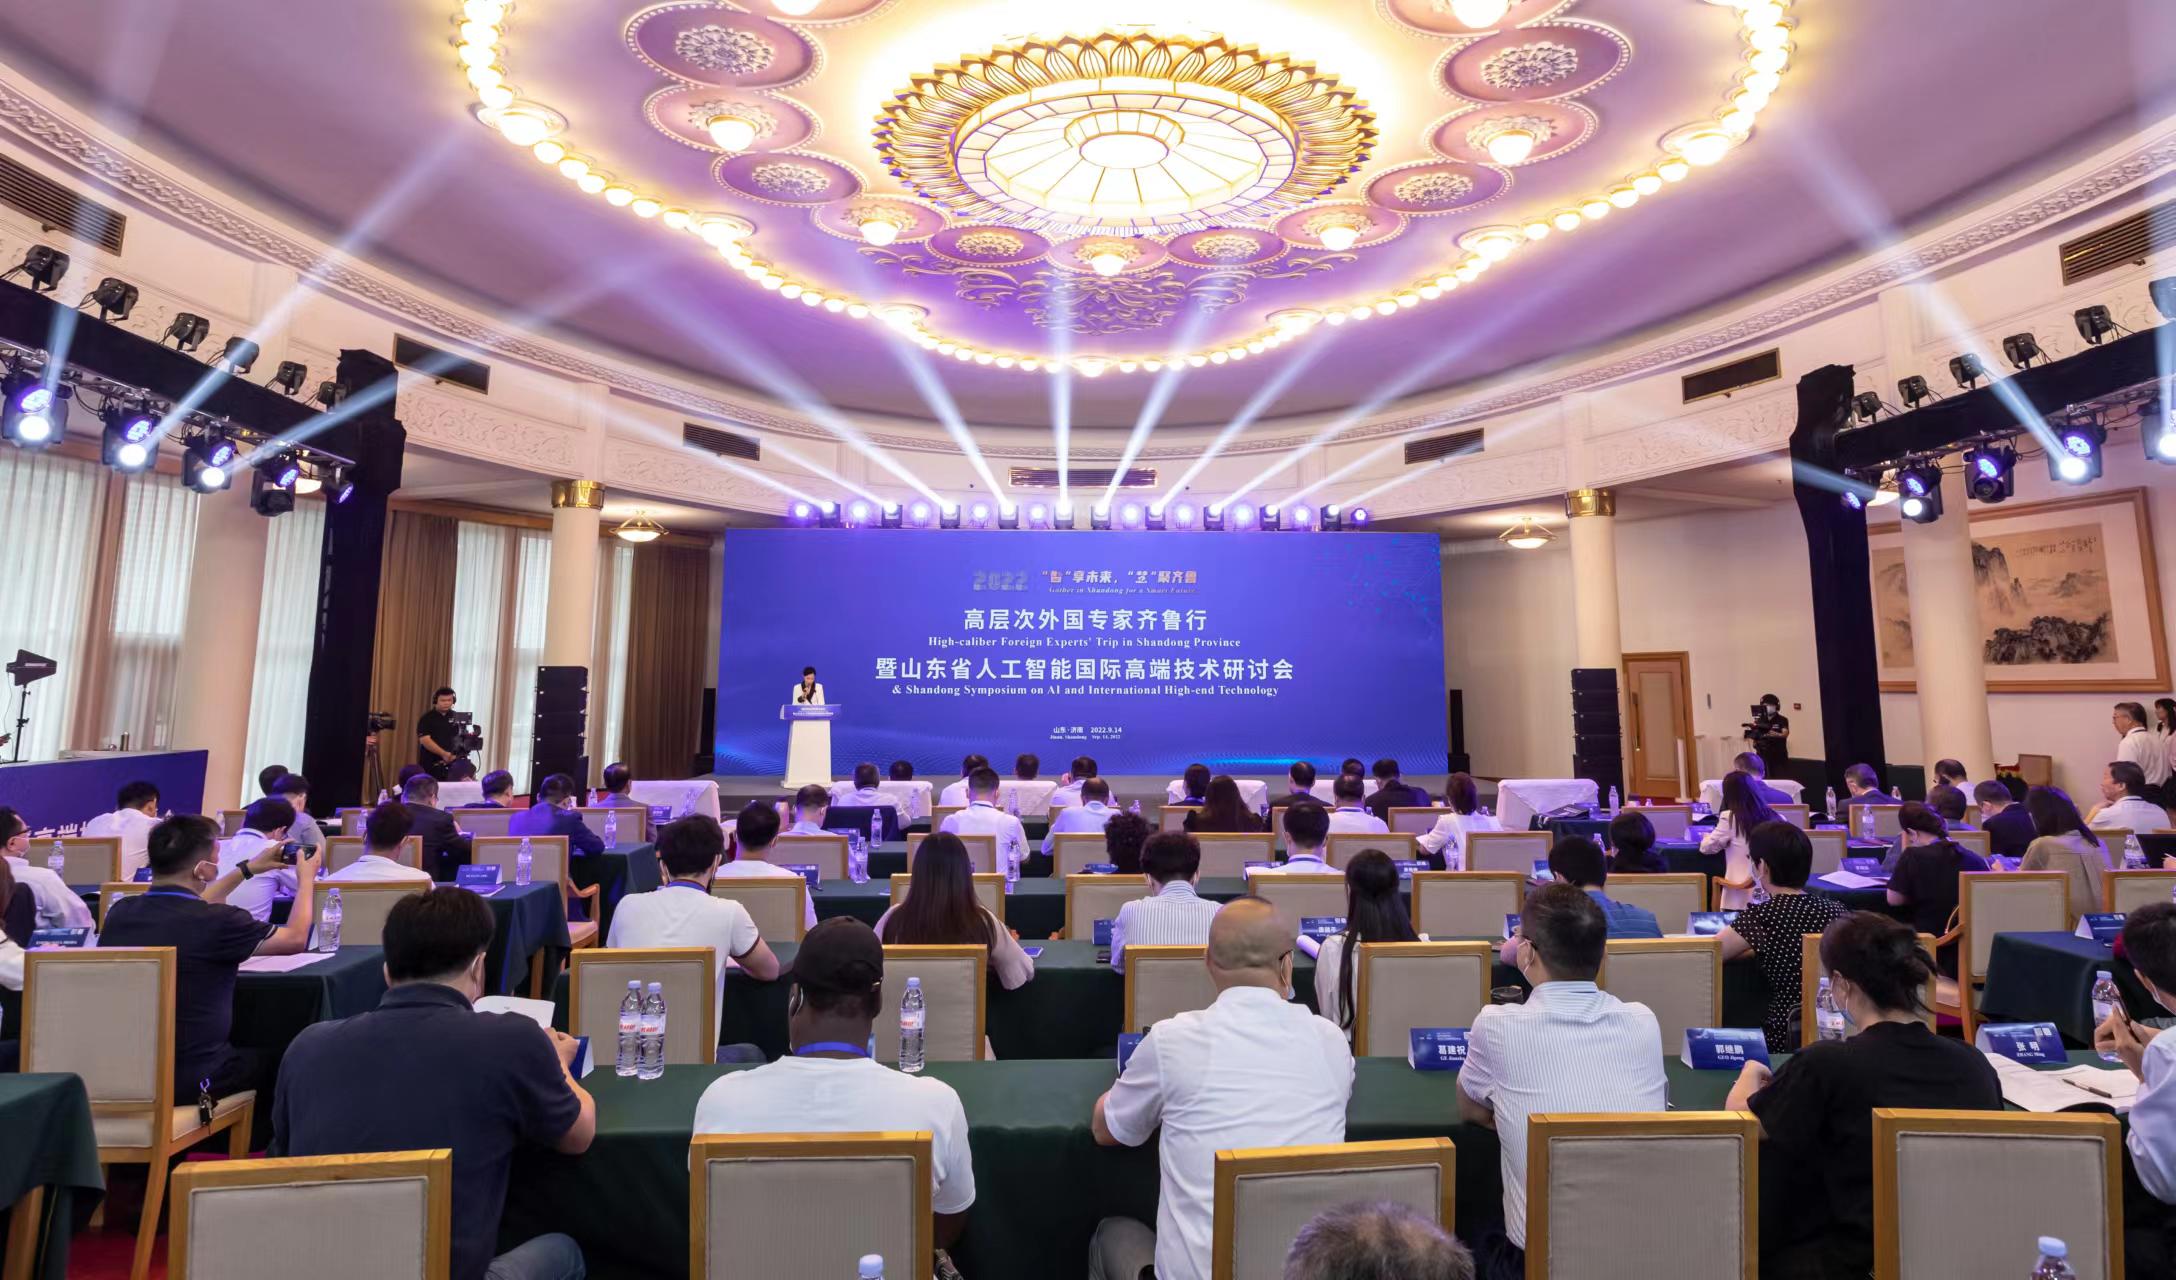 2022年高层次外国专家齐鲁行暨山东省人工智能国际高端技术研讨会在济南举行